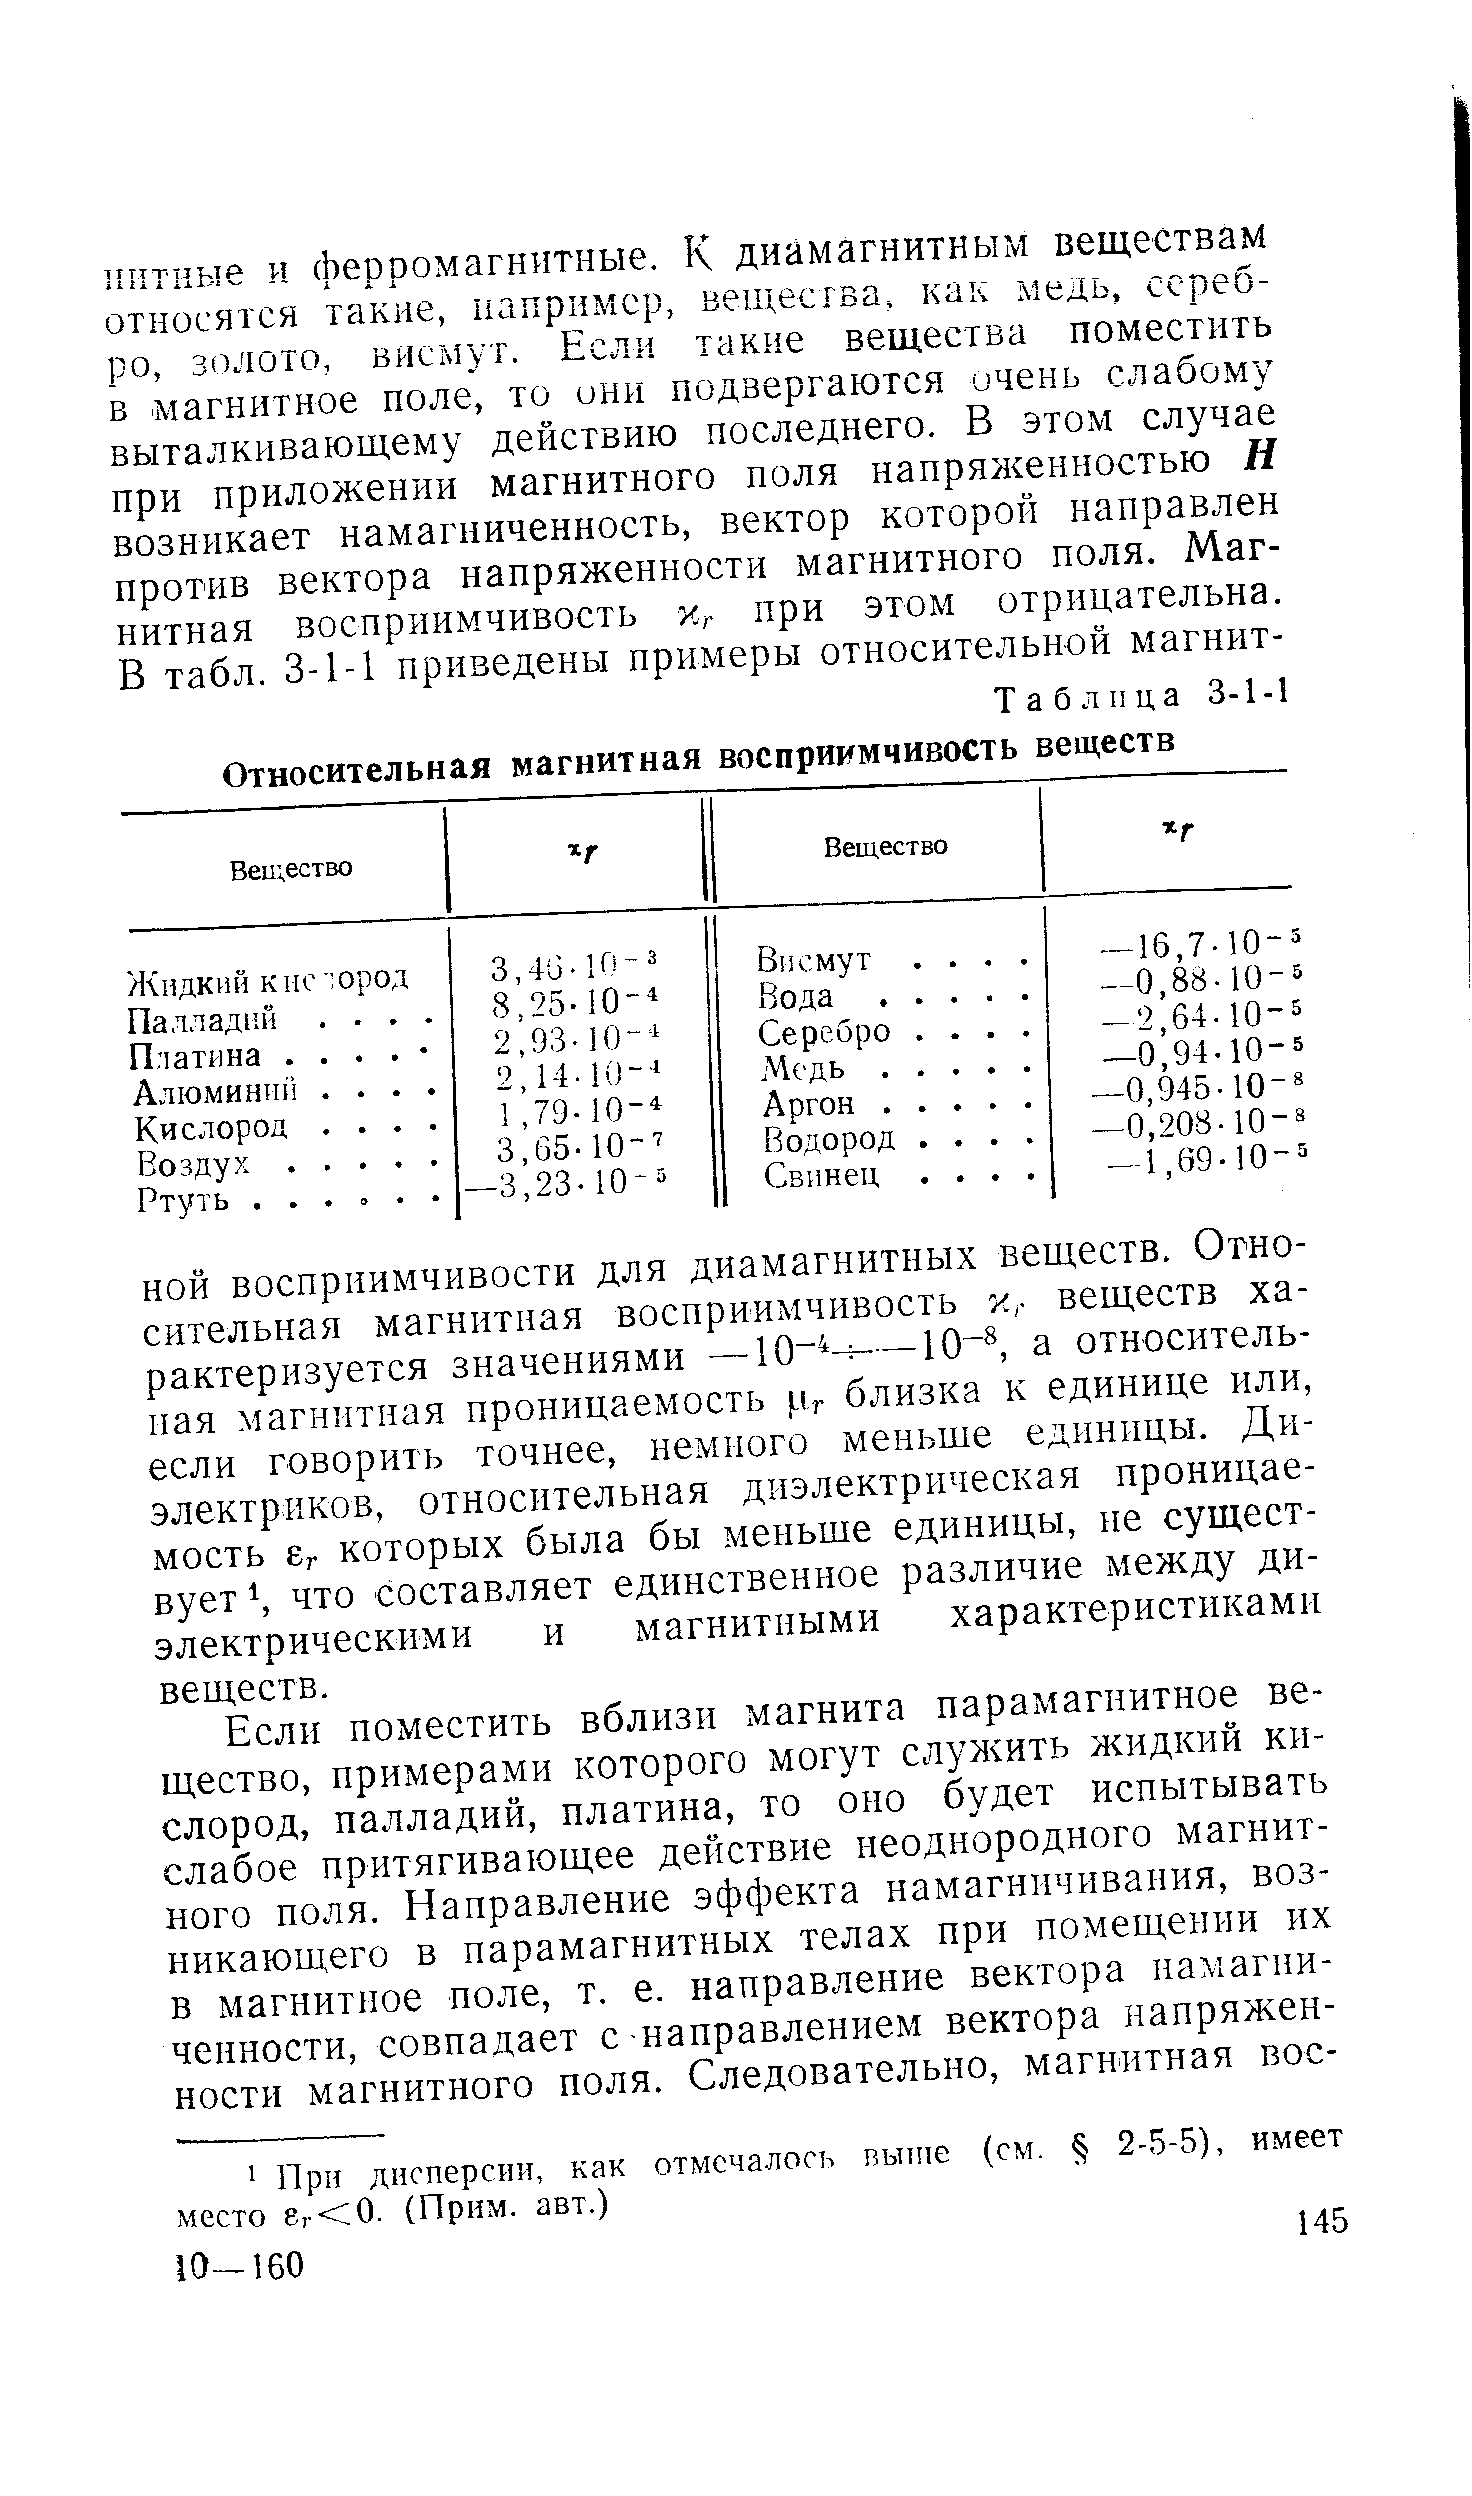 Таблица 3-1-1 Относительная магнитная восприимчивость веществ
